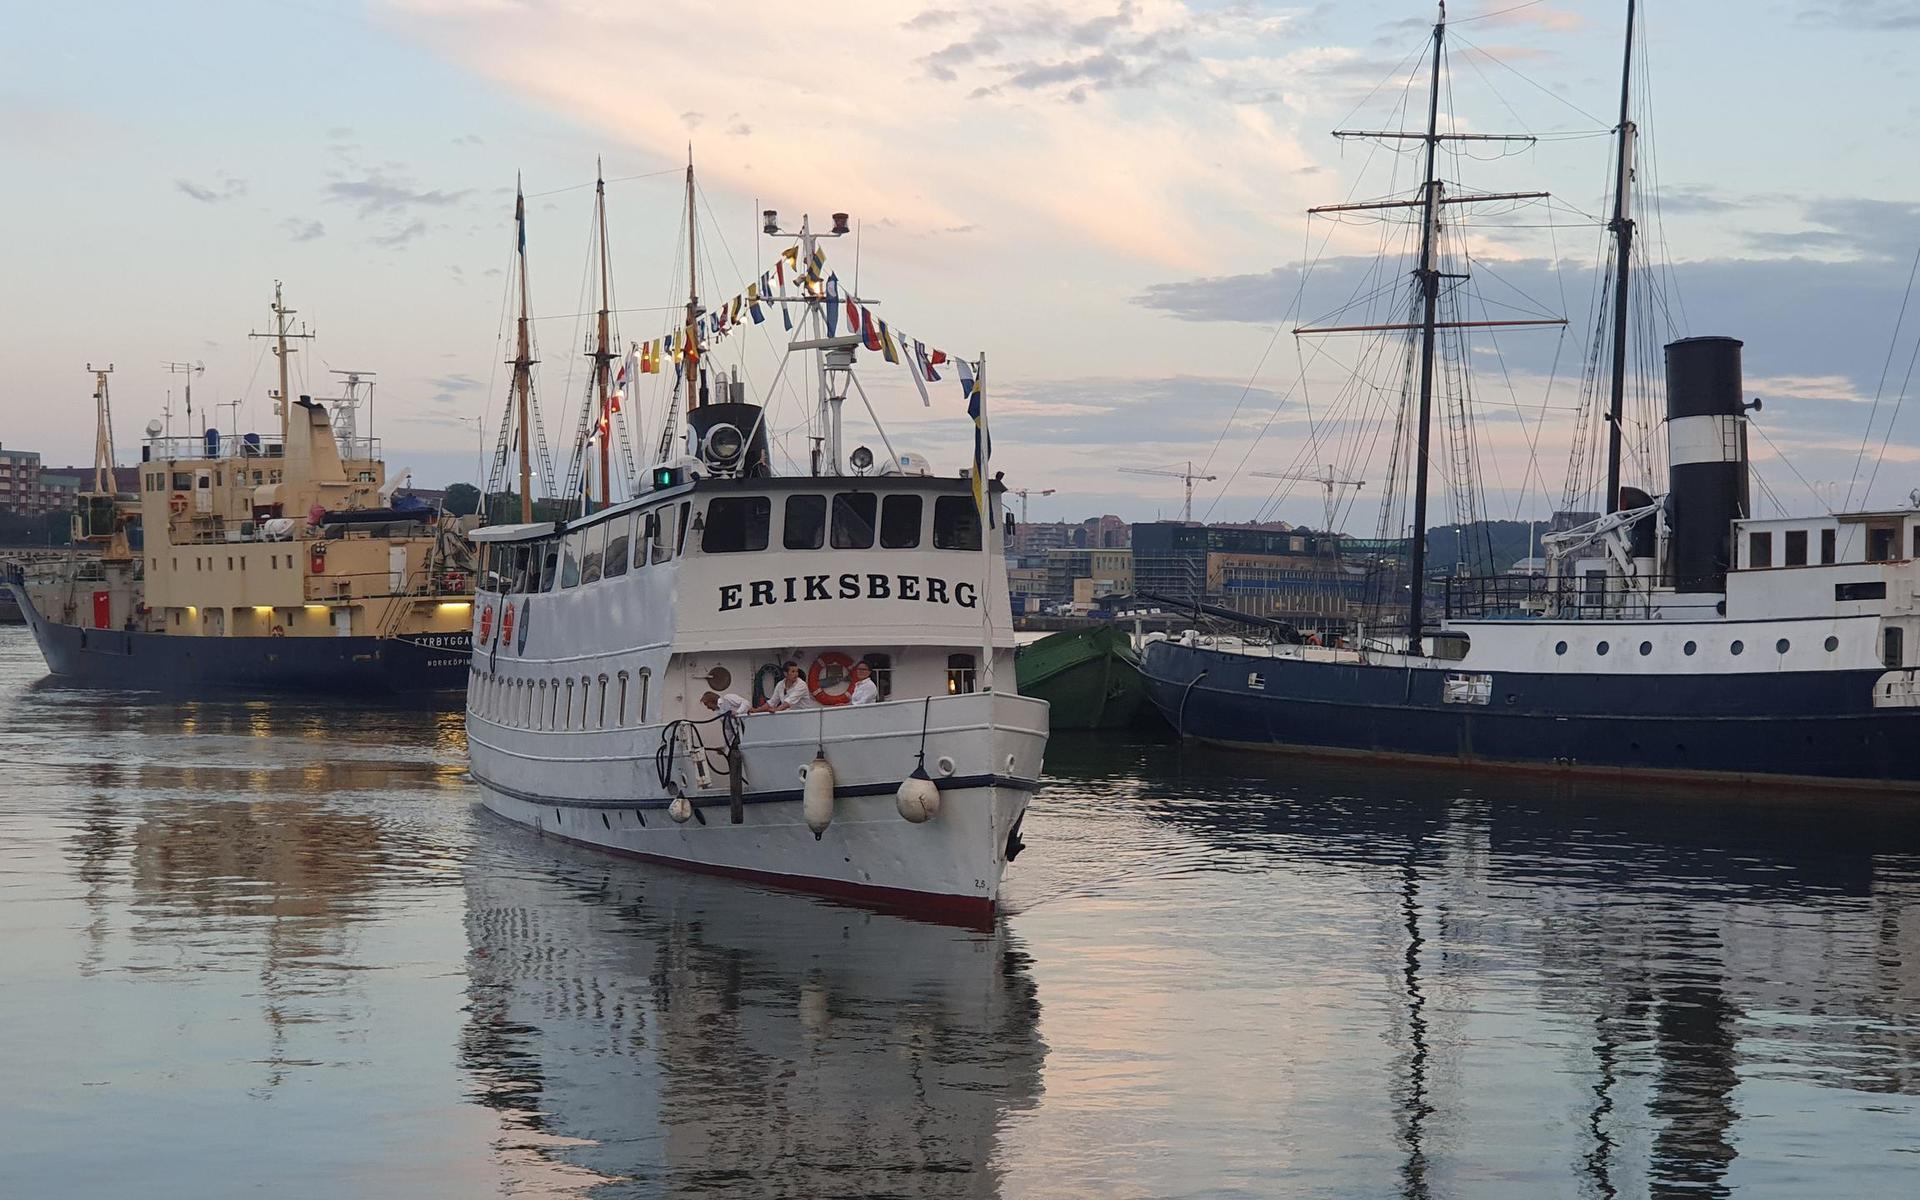 Under namngivningsceremonin åkte båten sin första färd under namnet Eriksberg